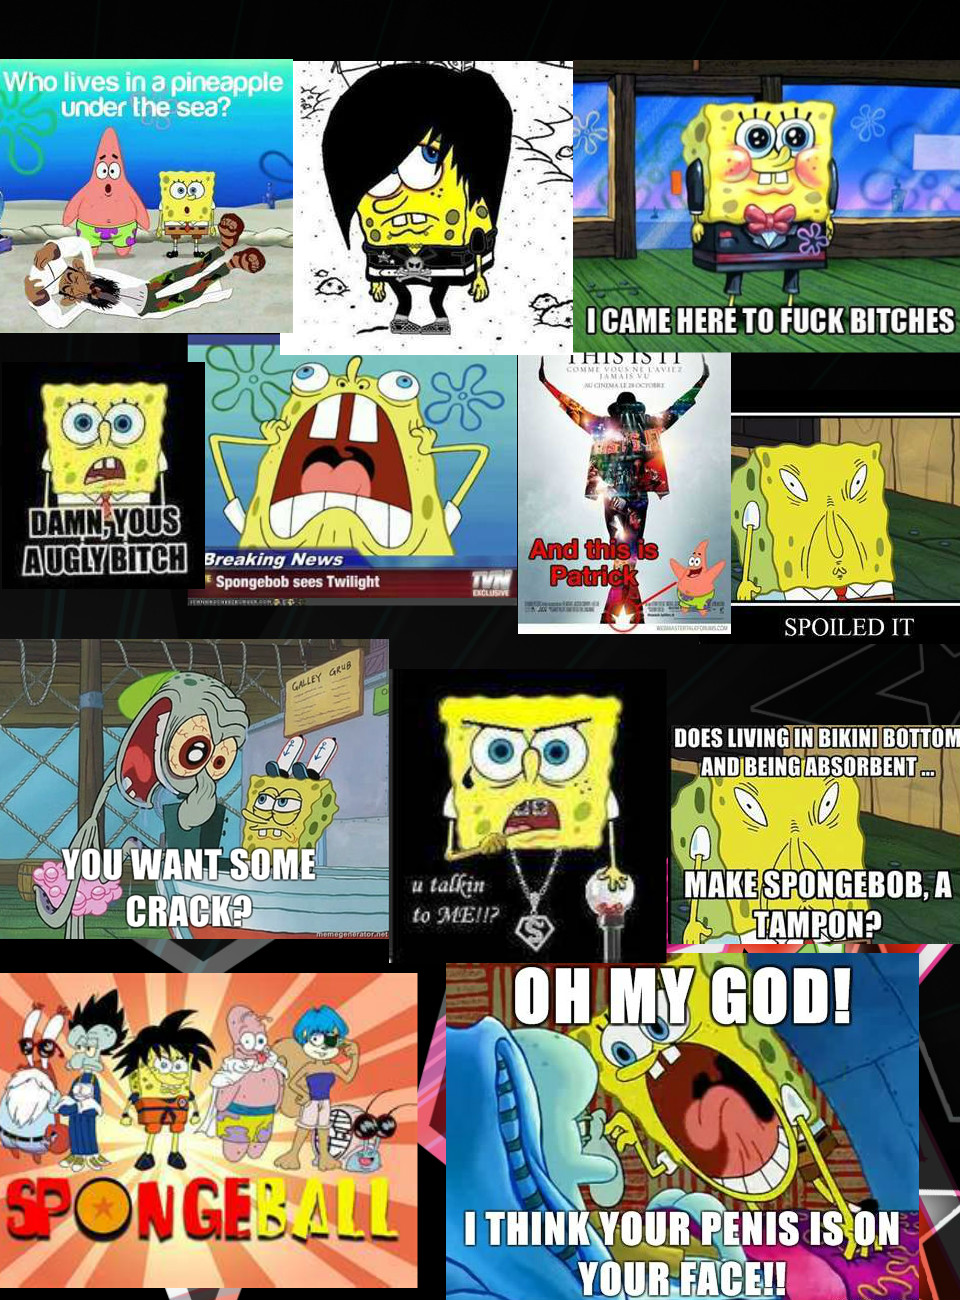 Funny Biz Spongebob Pictures